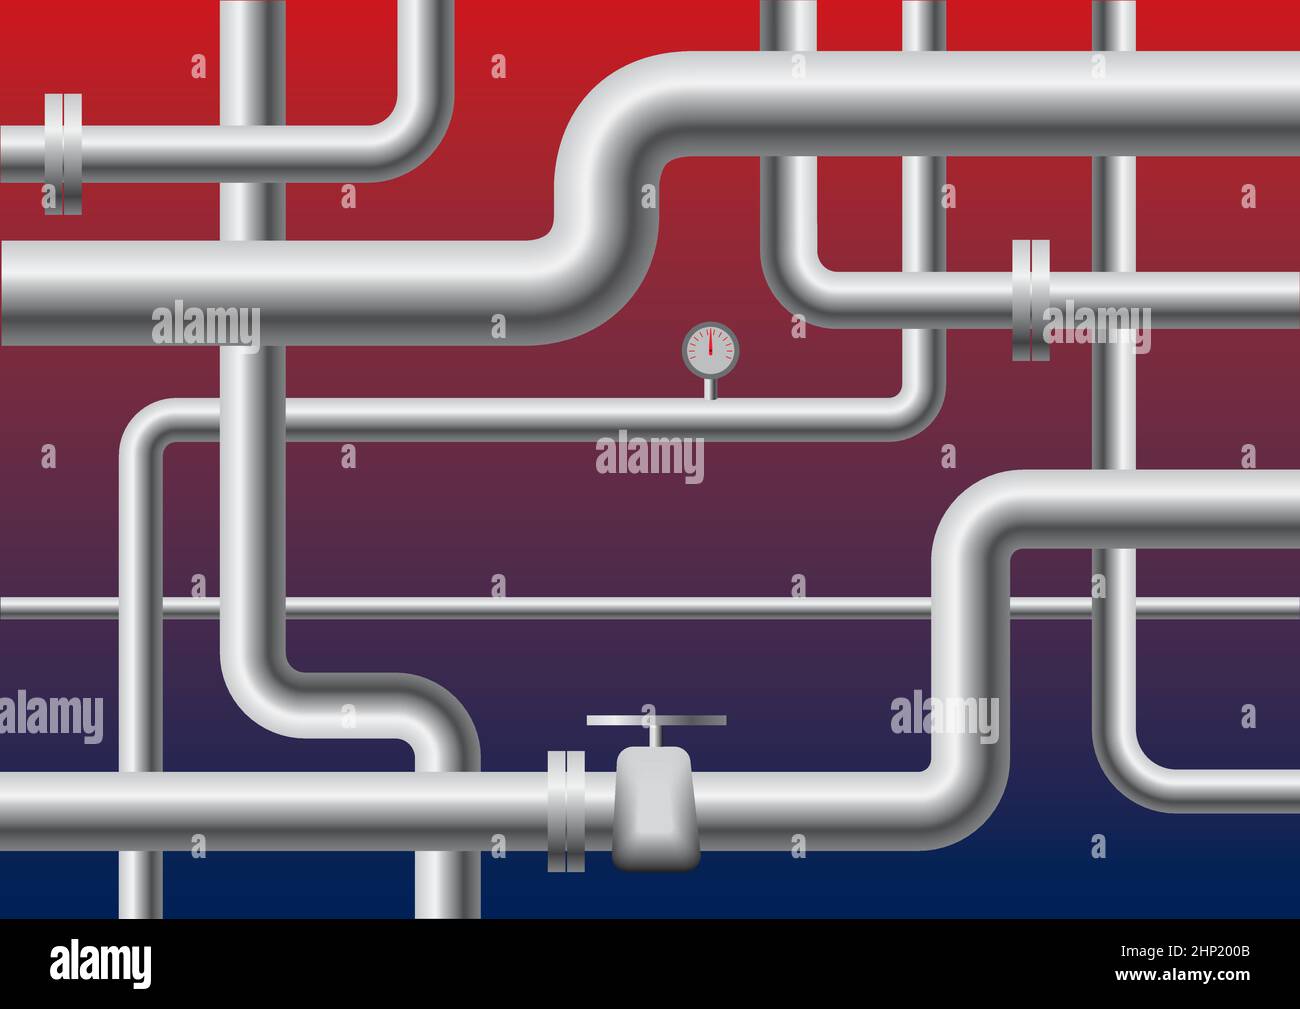 Pipelines Vektorgrafik. Eine Abbildung von Industrierohren unterschiedlicher Größe auf einem bunten rot-blauen Hintergrund. Perfekt, um die dist zu illustrieren Stock Vektor